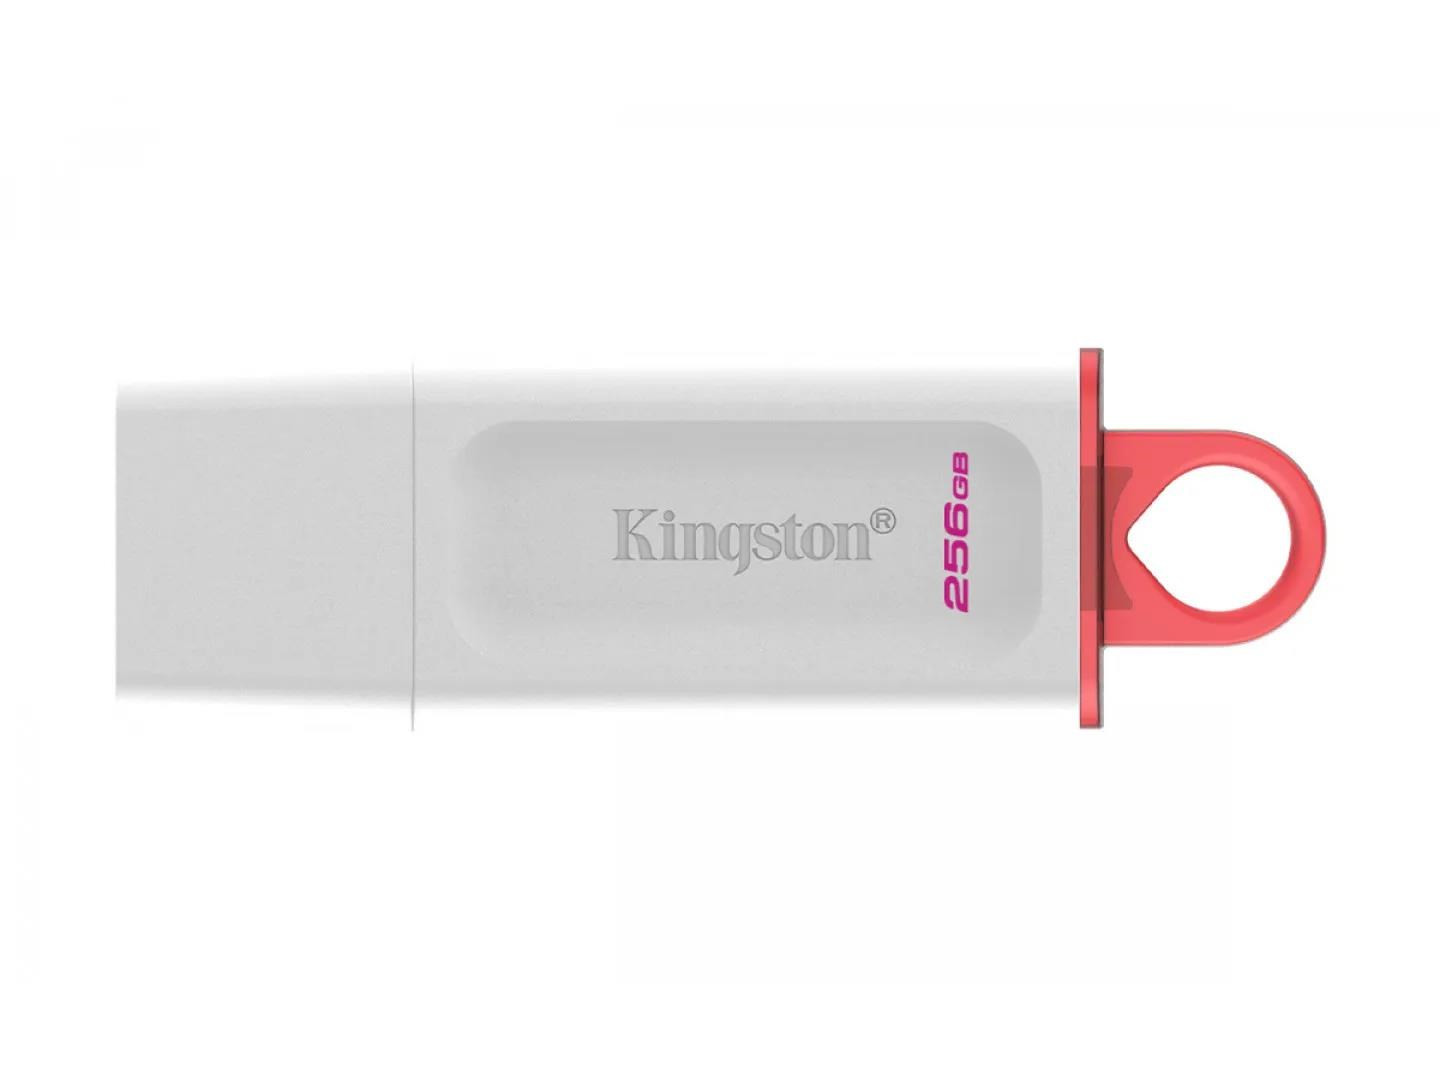 Kingston 256 GB USB3.2 Gen1 DataTraveler Exodia (fehér + rózsaszín)